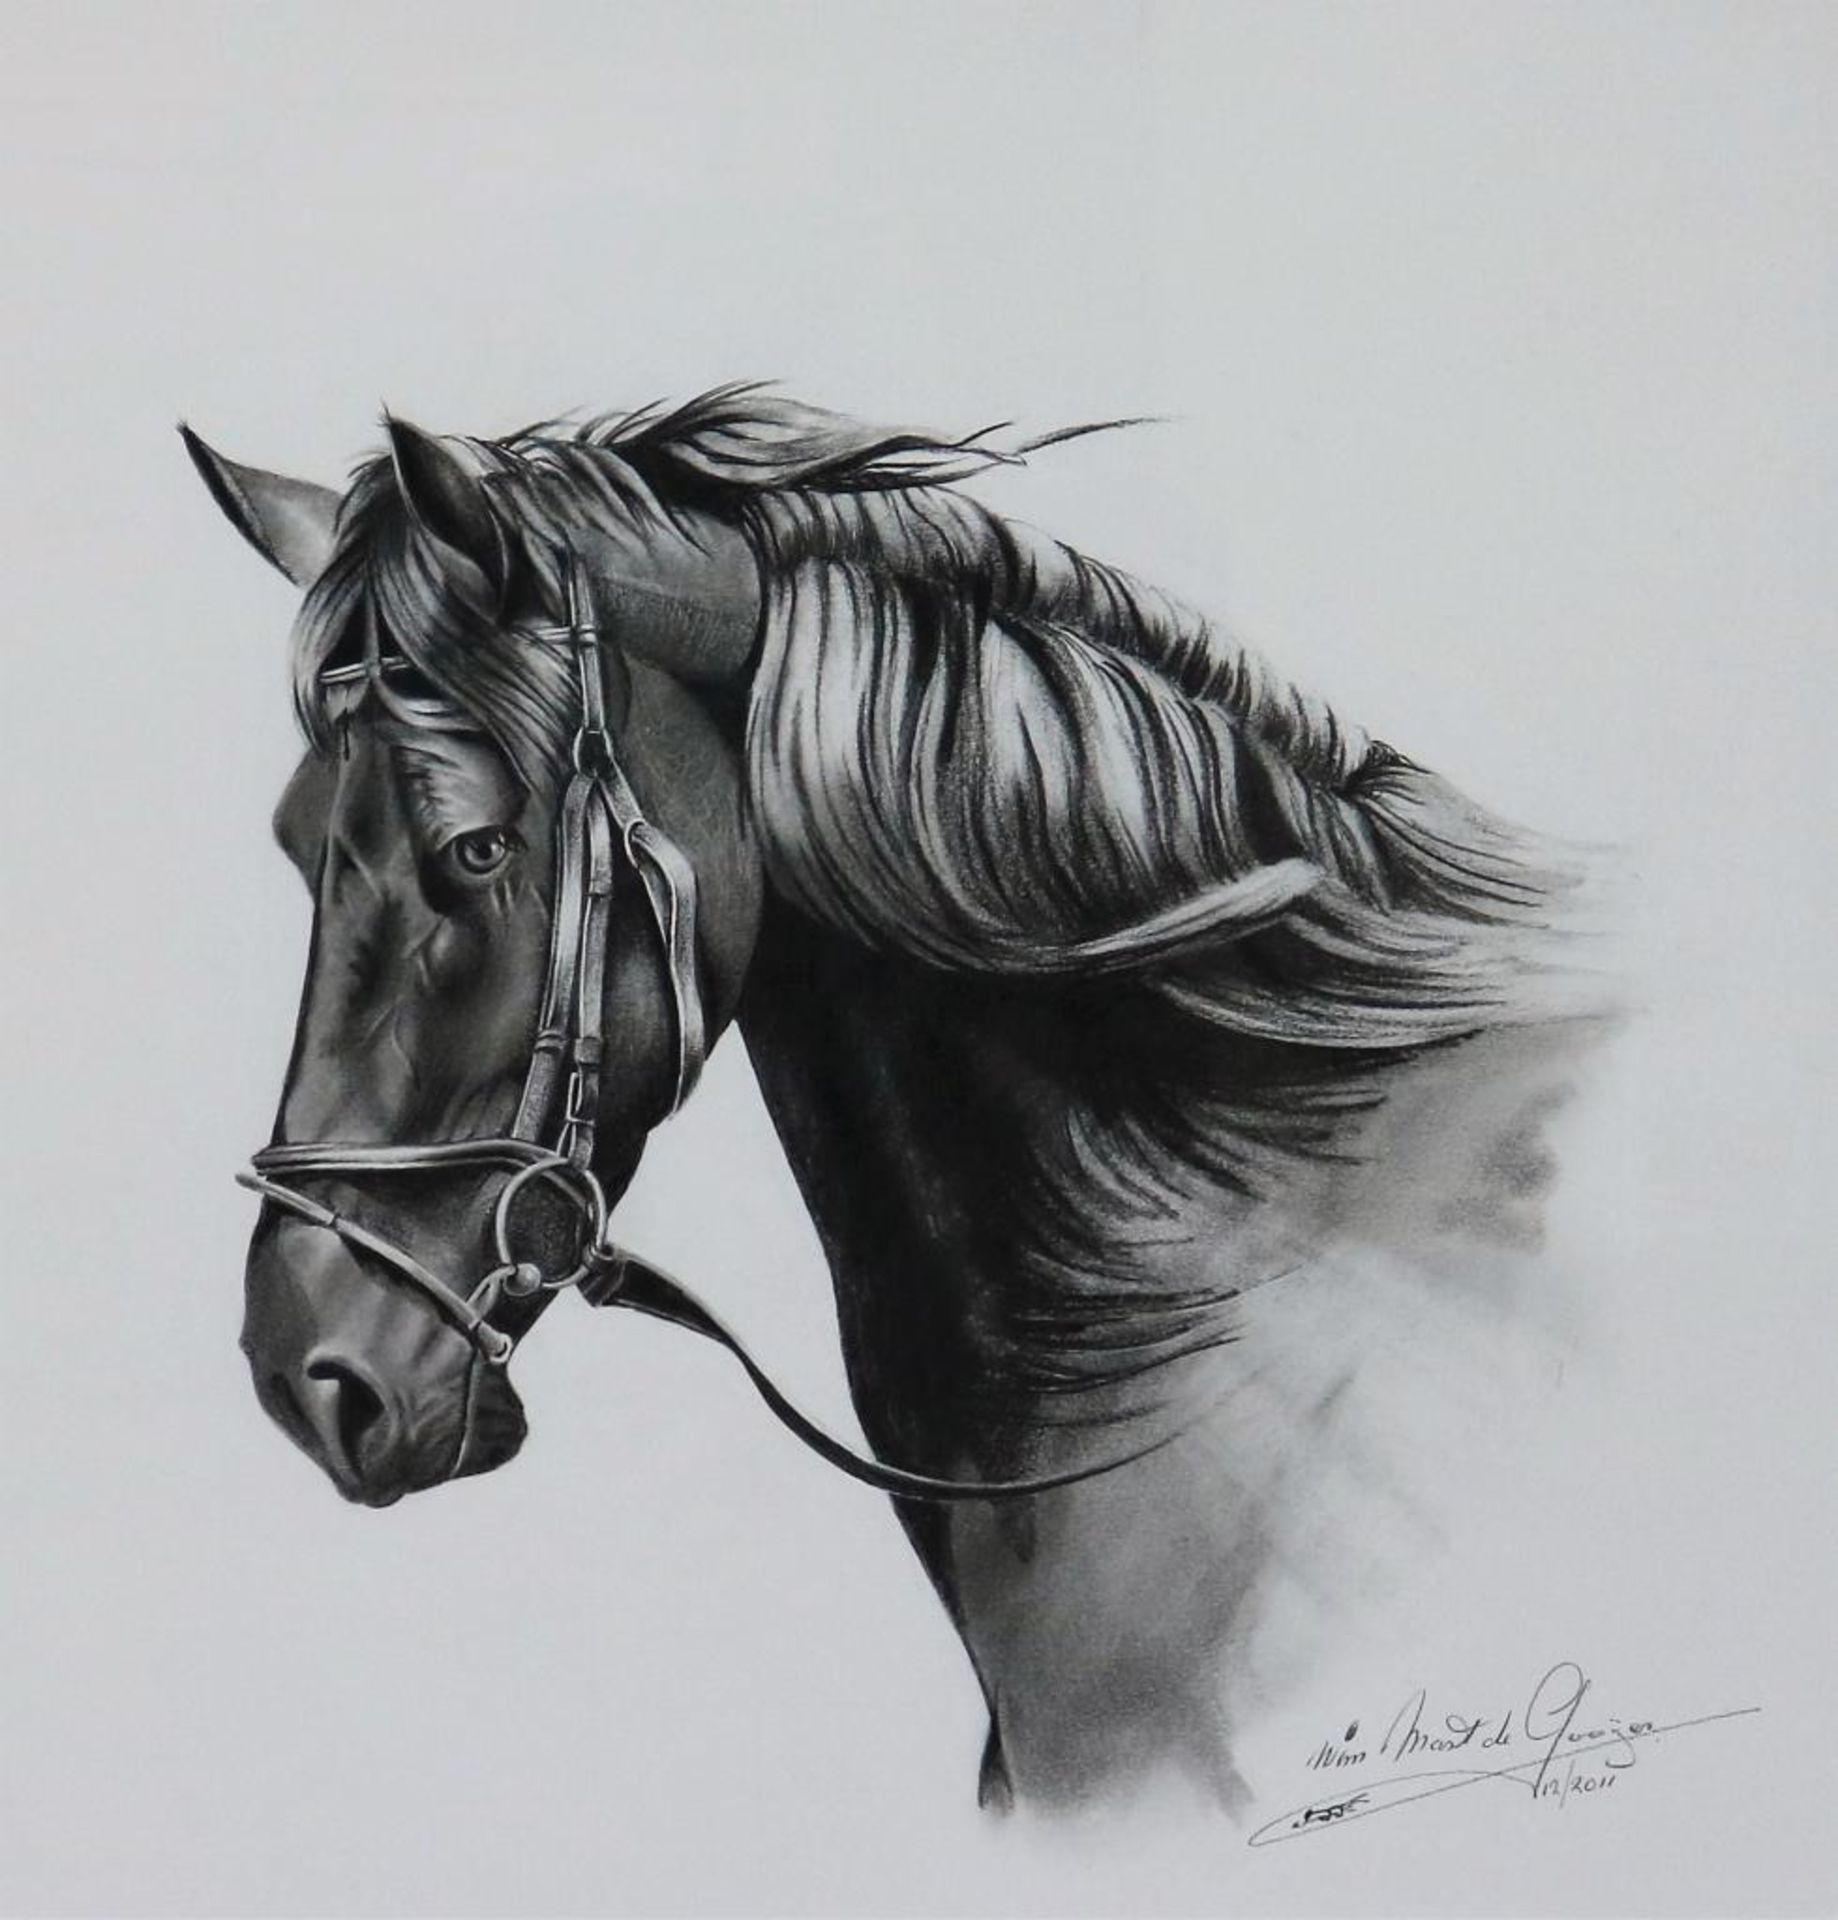 Gooijer, paardenhoofd, tekening